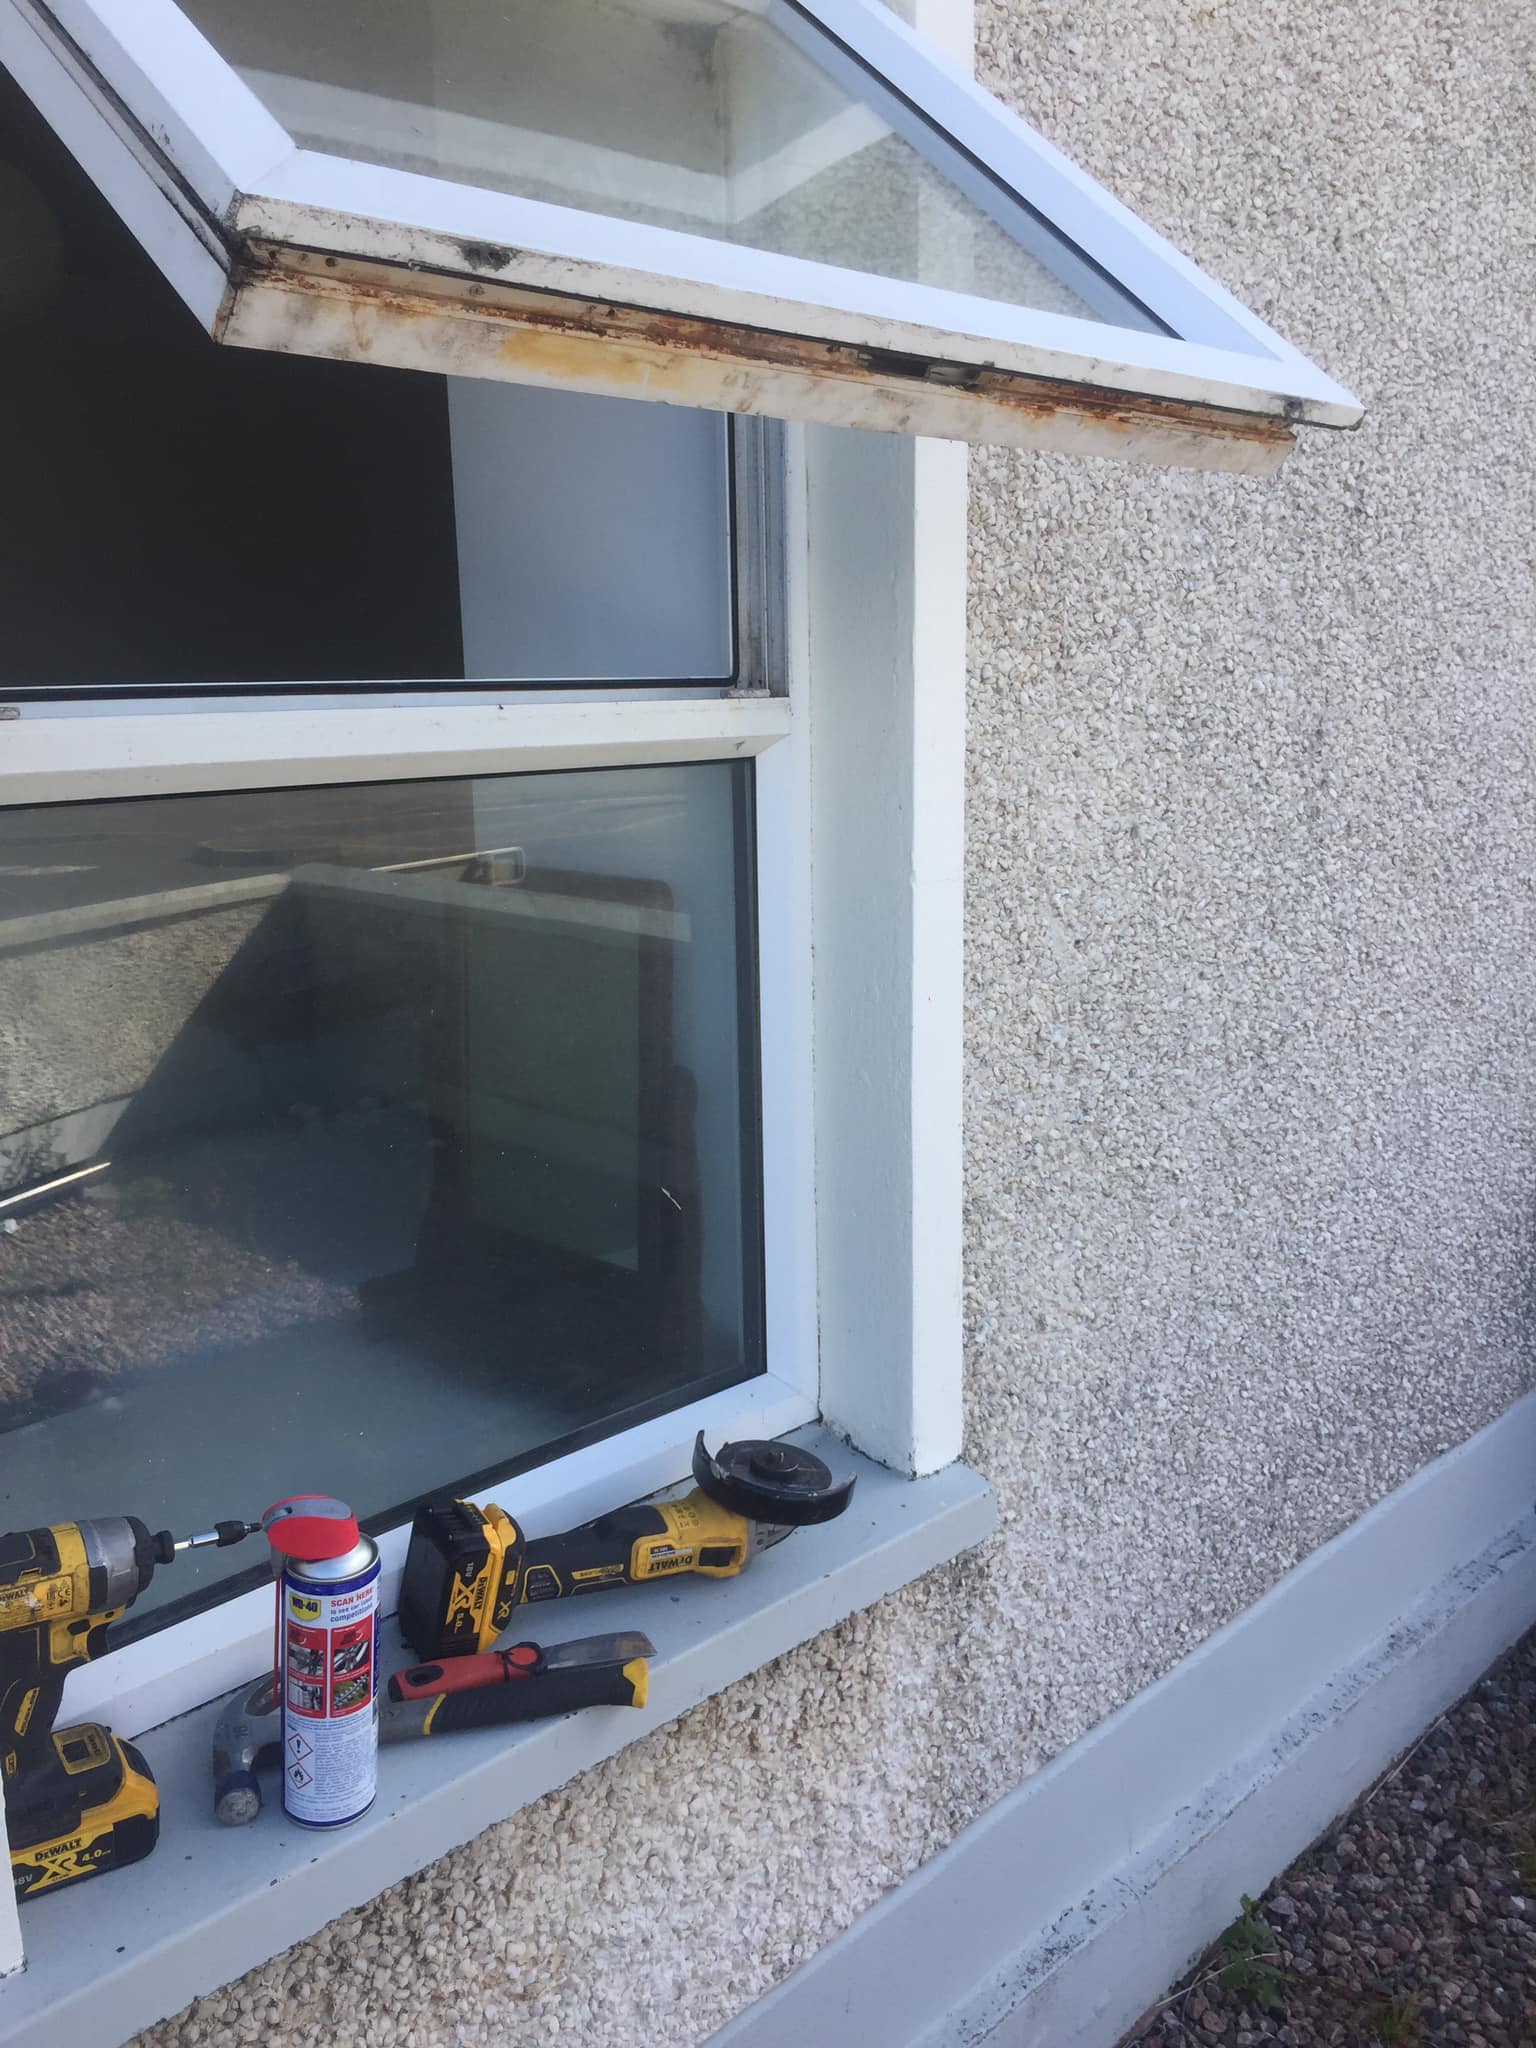 Fixing window hinge